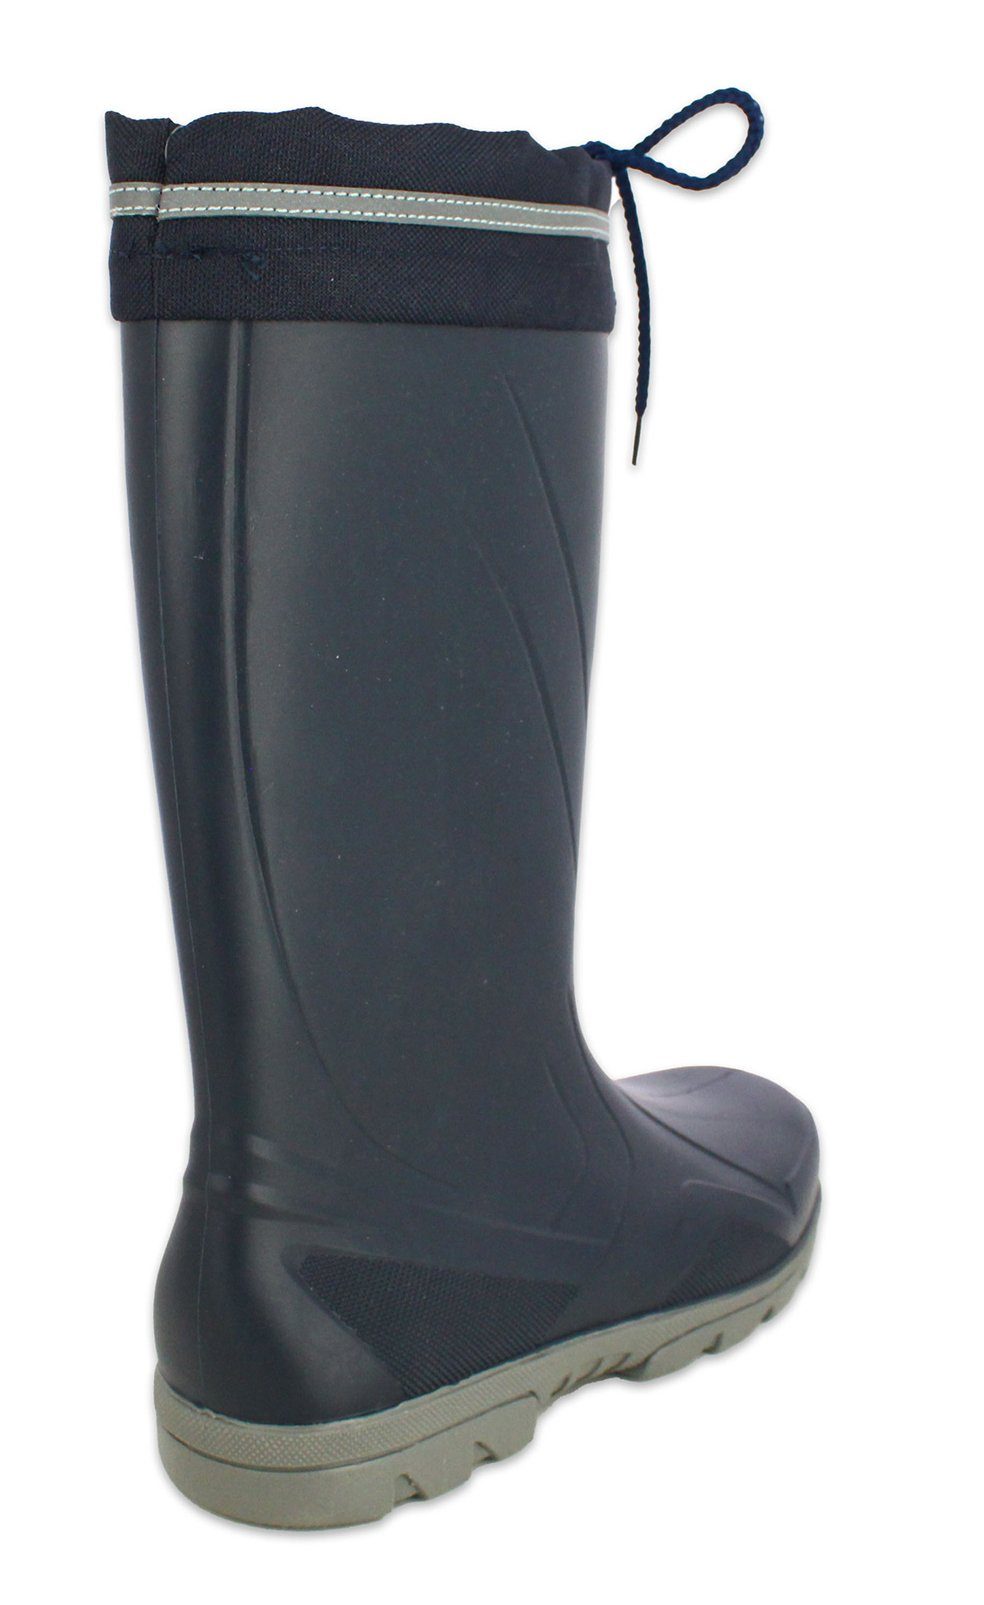 Beck Damen Regenstiefel für Einlegesohle strapazierfähig, wasserdicht, trockene, (klassischer dunkelblau robust, Füße) herausnehmbare Gummistiefel warme Stiefel, Sailor